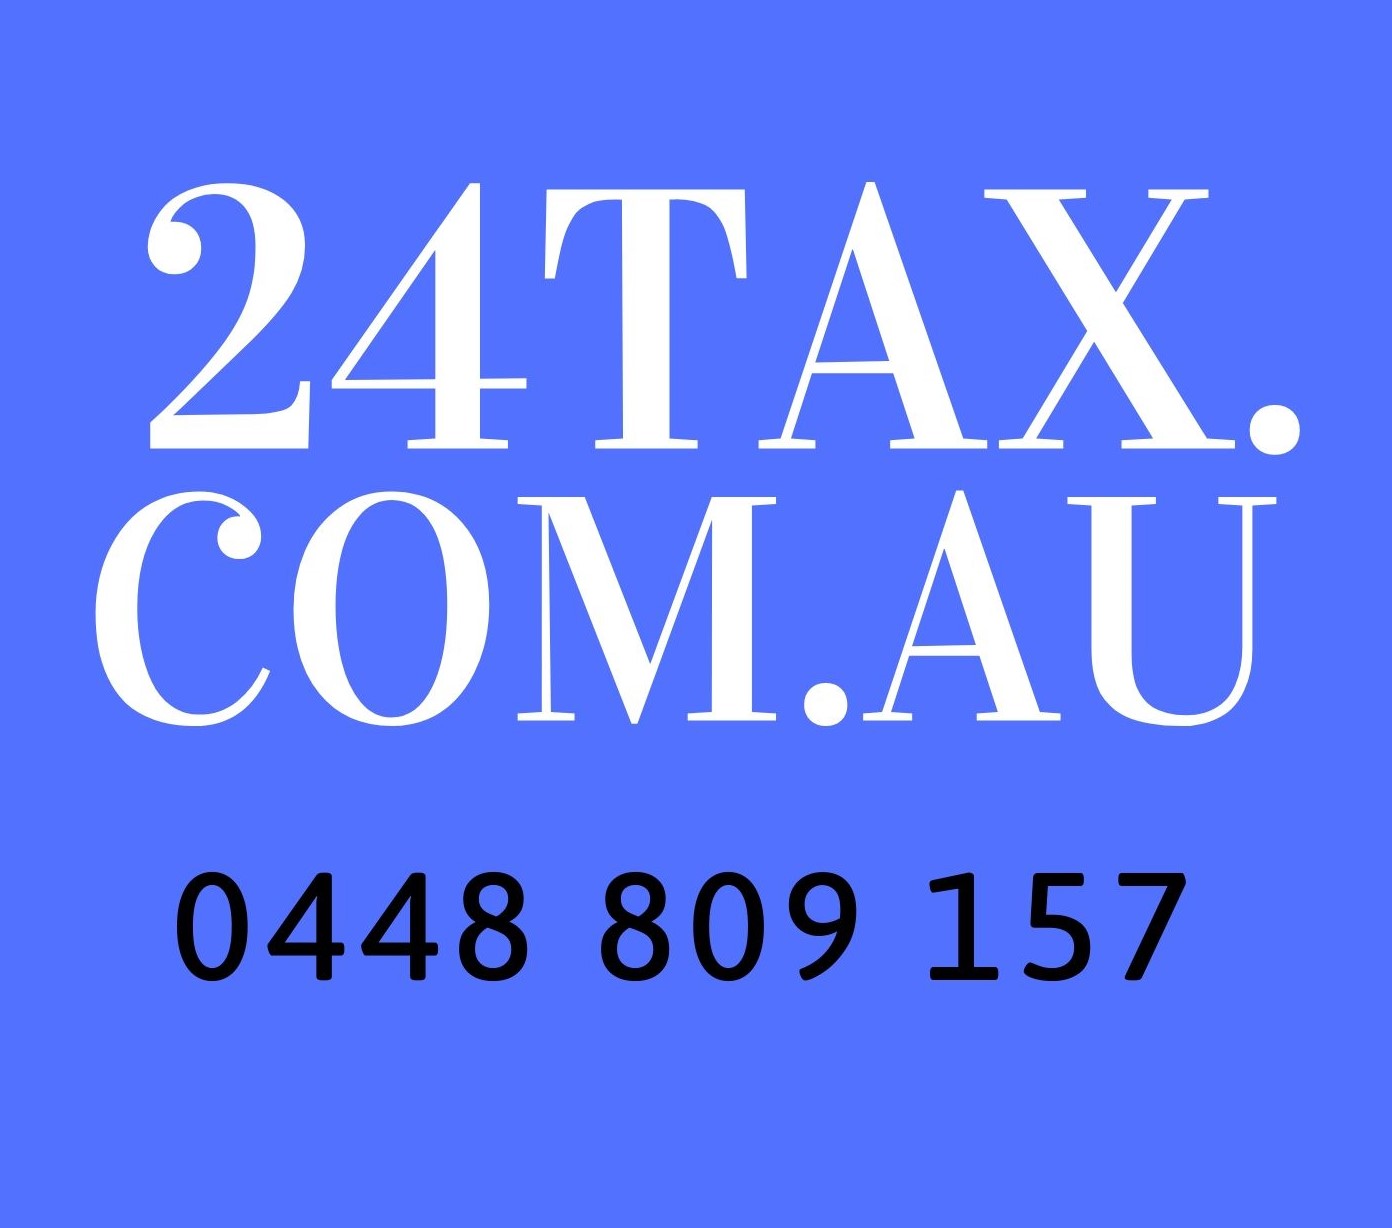 24tax.com.au (2)